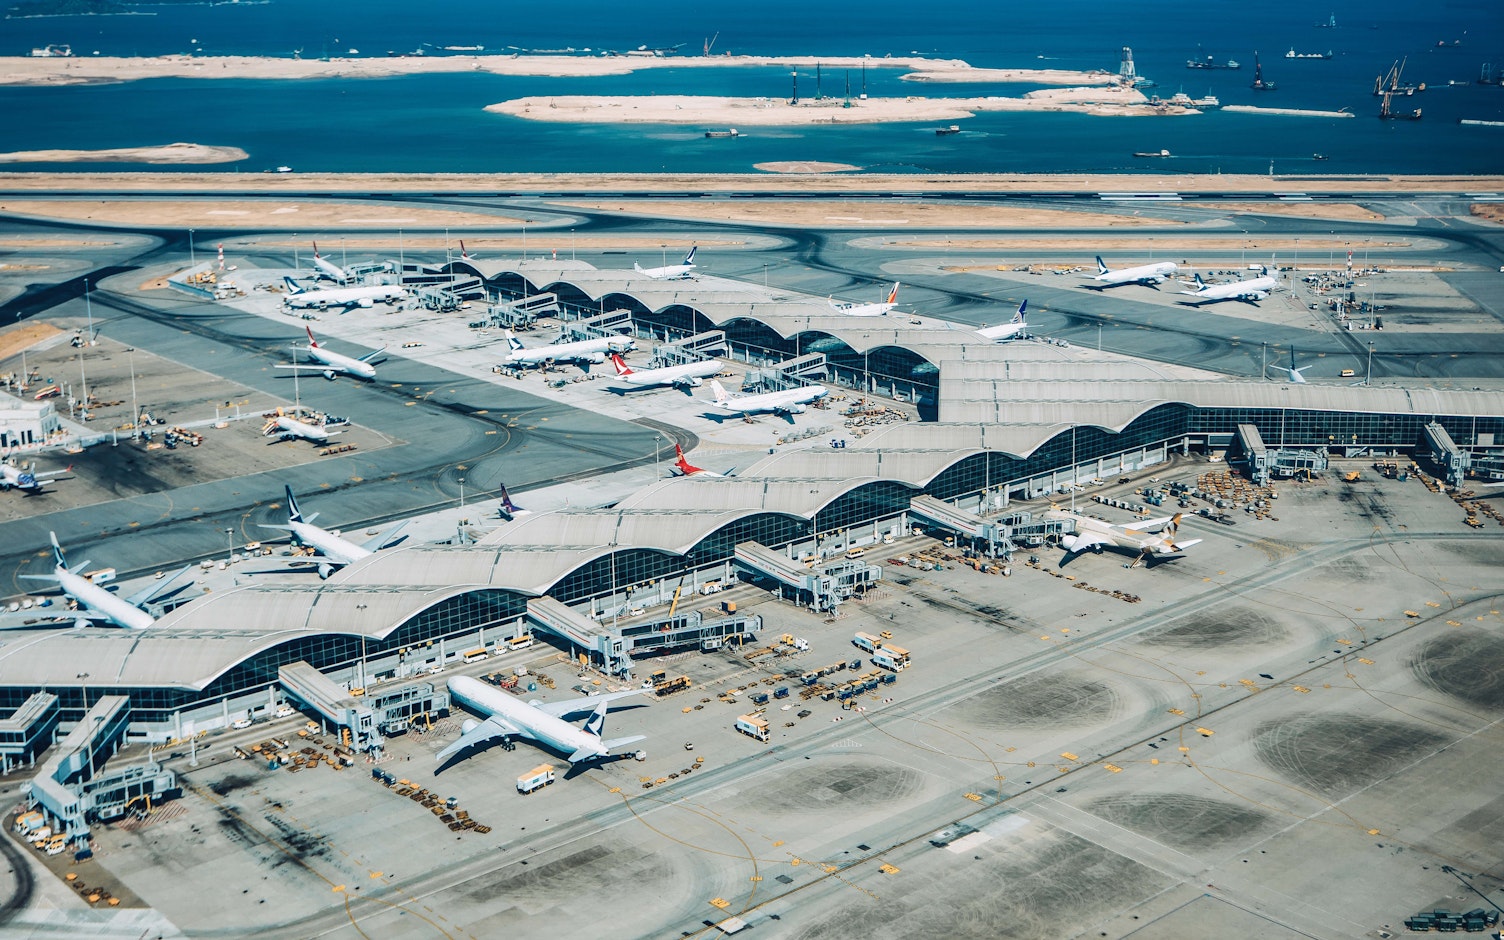 Aerial View of Hong Kong International Airport NoFocalPoint